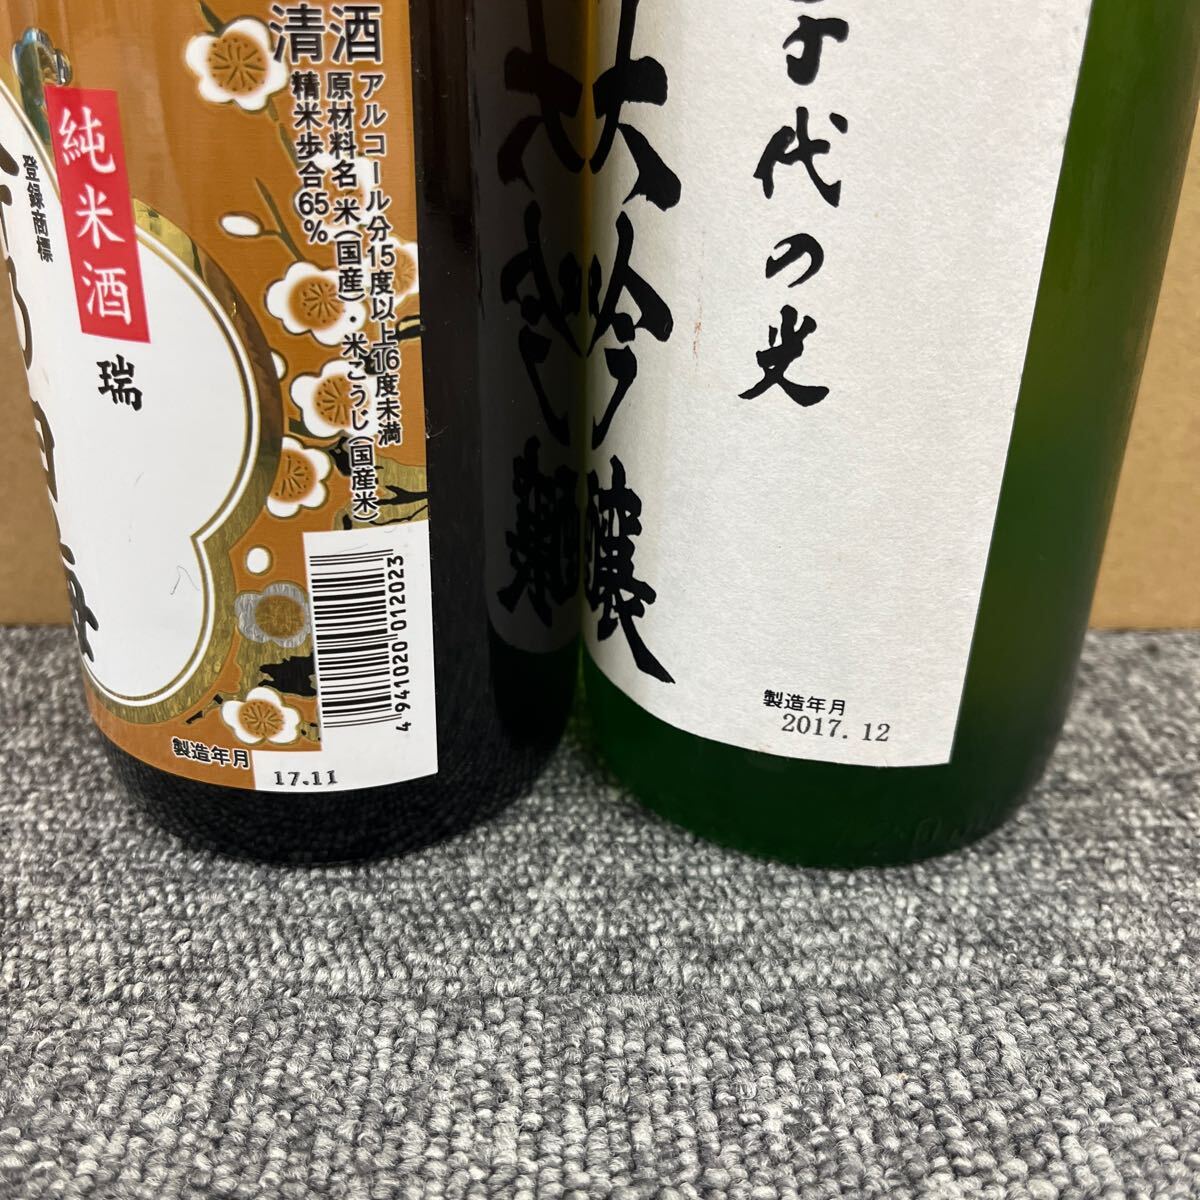 147. * не . штекер * японкое рисовое вино (sake) 1 2 шт суммировать сосна бамбук слива /... длина . sake .. журавль /.. холод слива / красота человек /.. белый слива / др. большой сакэ гиндзё Kiyoshi sake старый sake 